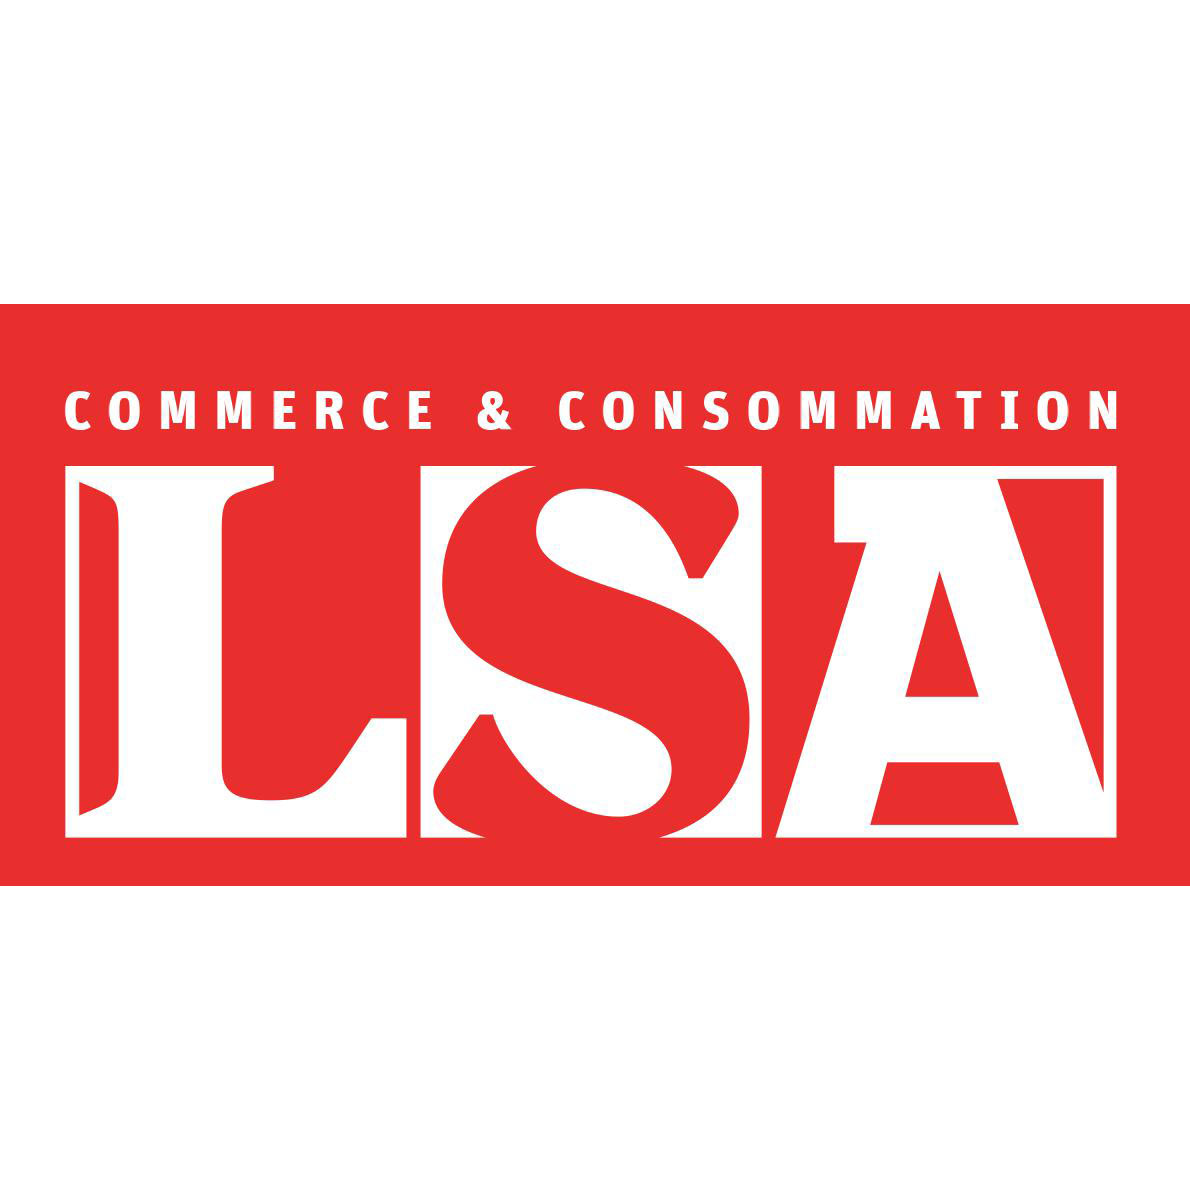 Utilité de la clause de non-concurrence (LSA, octobre 2014)